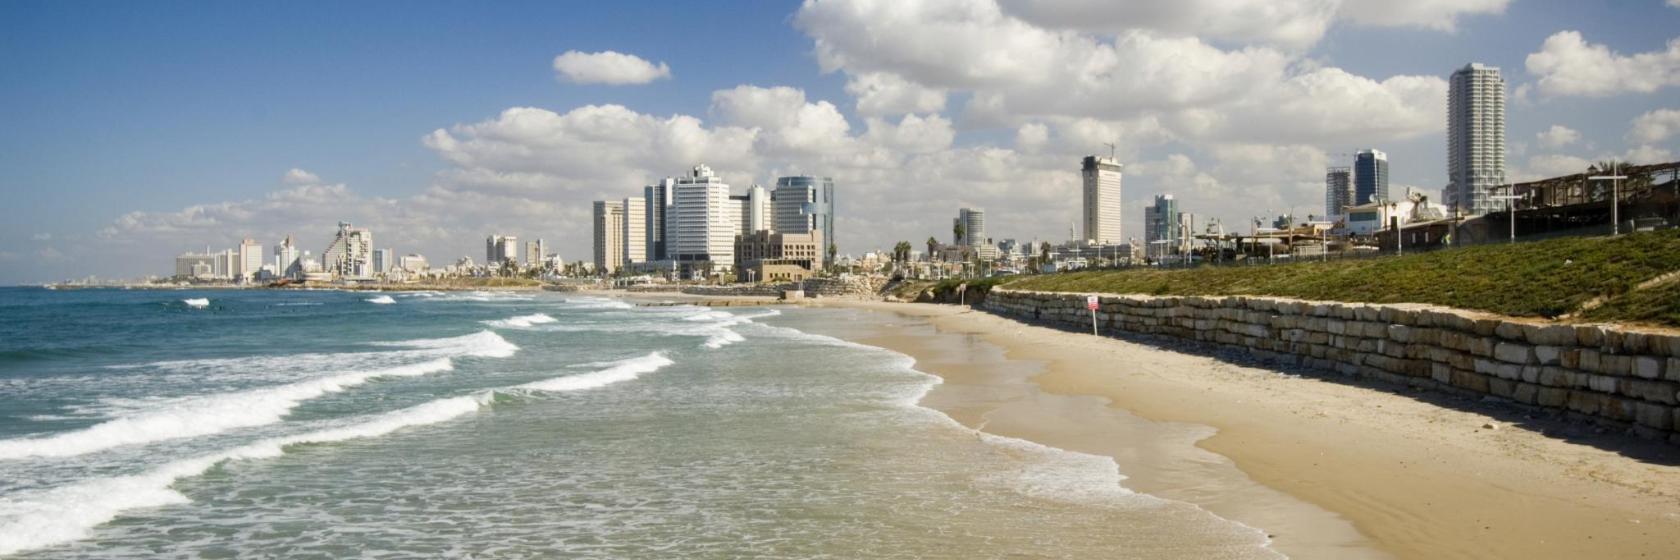 10 המלונות הכי טובים ב-אזור תל אביב - איפה לשהות ב-אזור תל אביב, ישראל